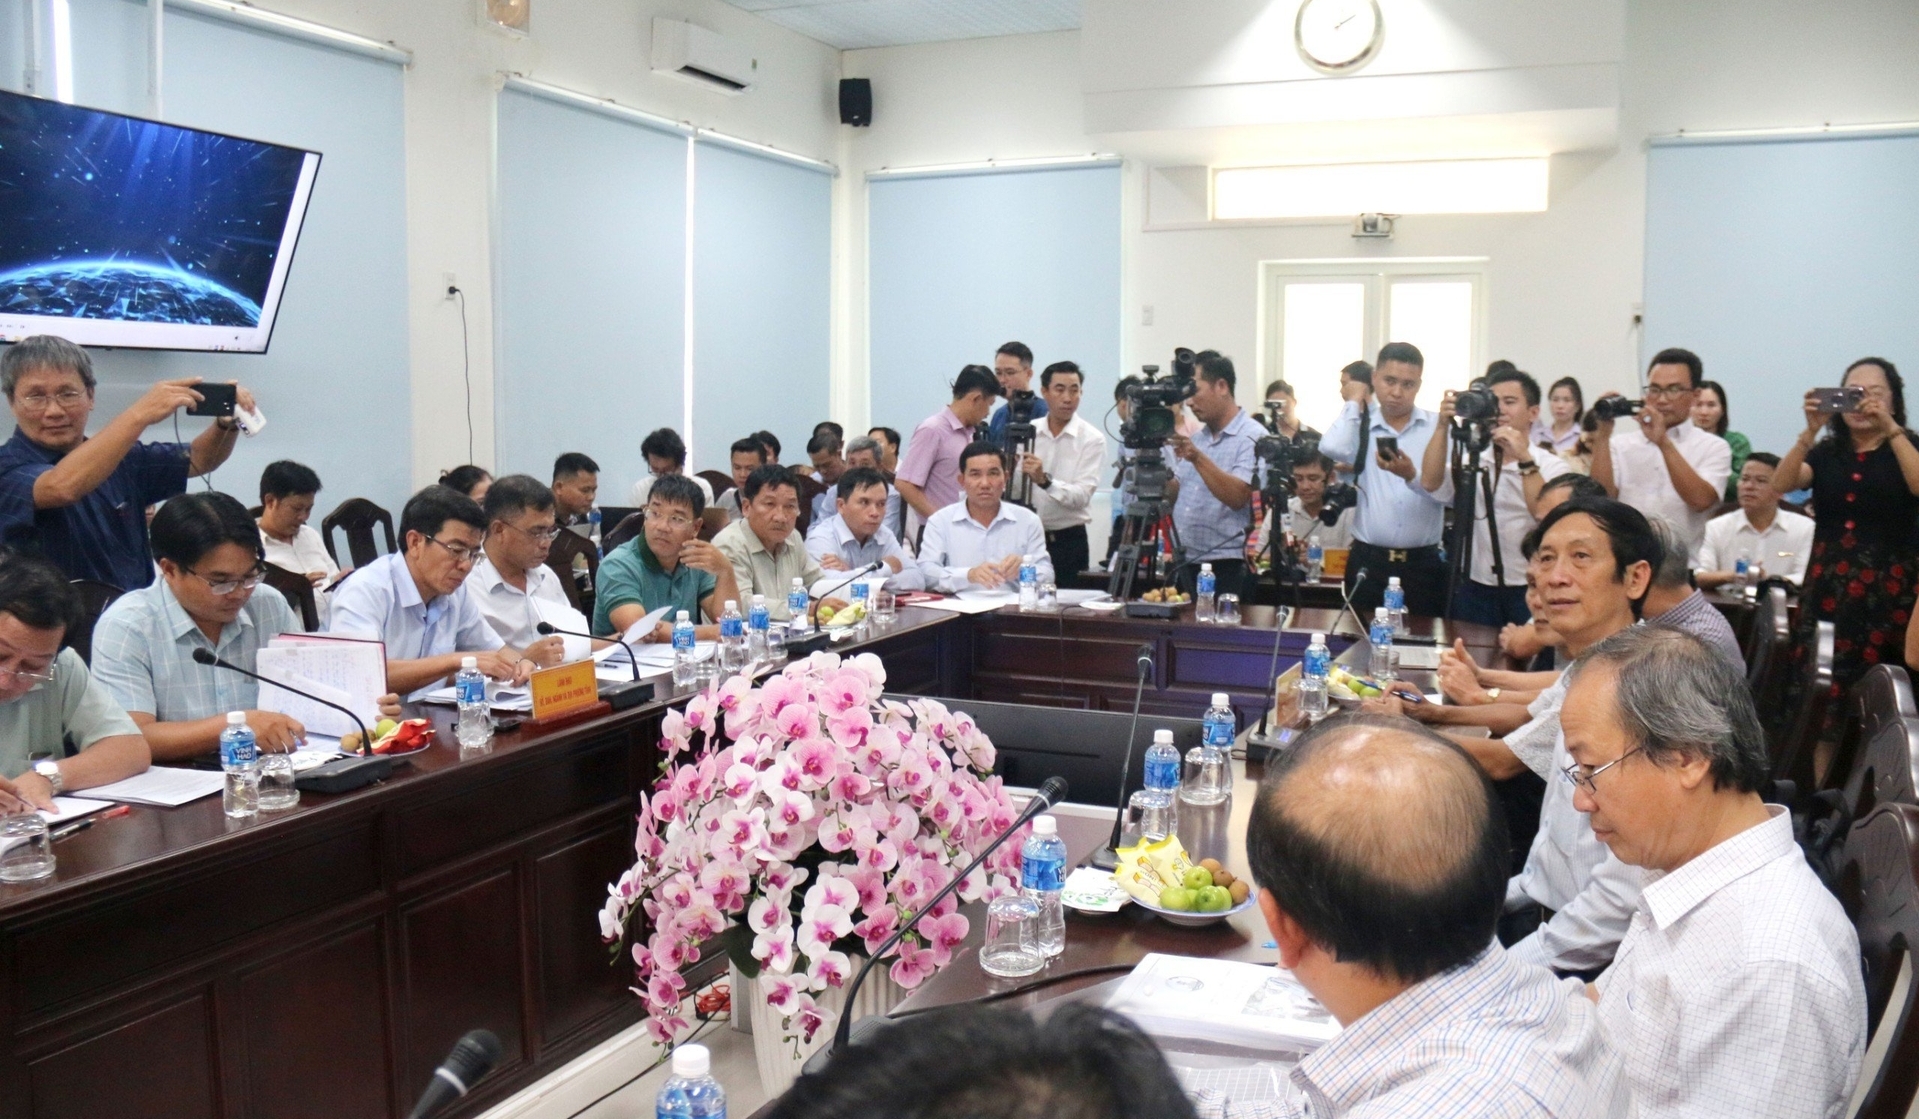 Đông đảo báo chí tham dự buổi họp báo về dự án hồ chứa nước Ka Pét. Ảnh: NT.